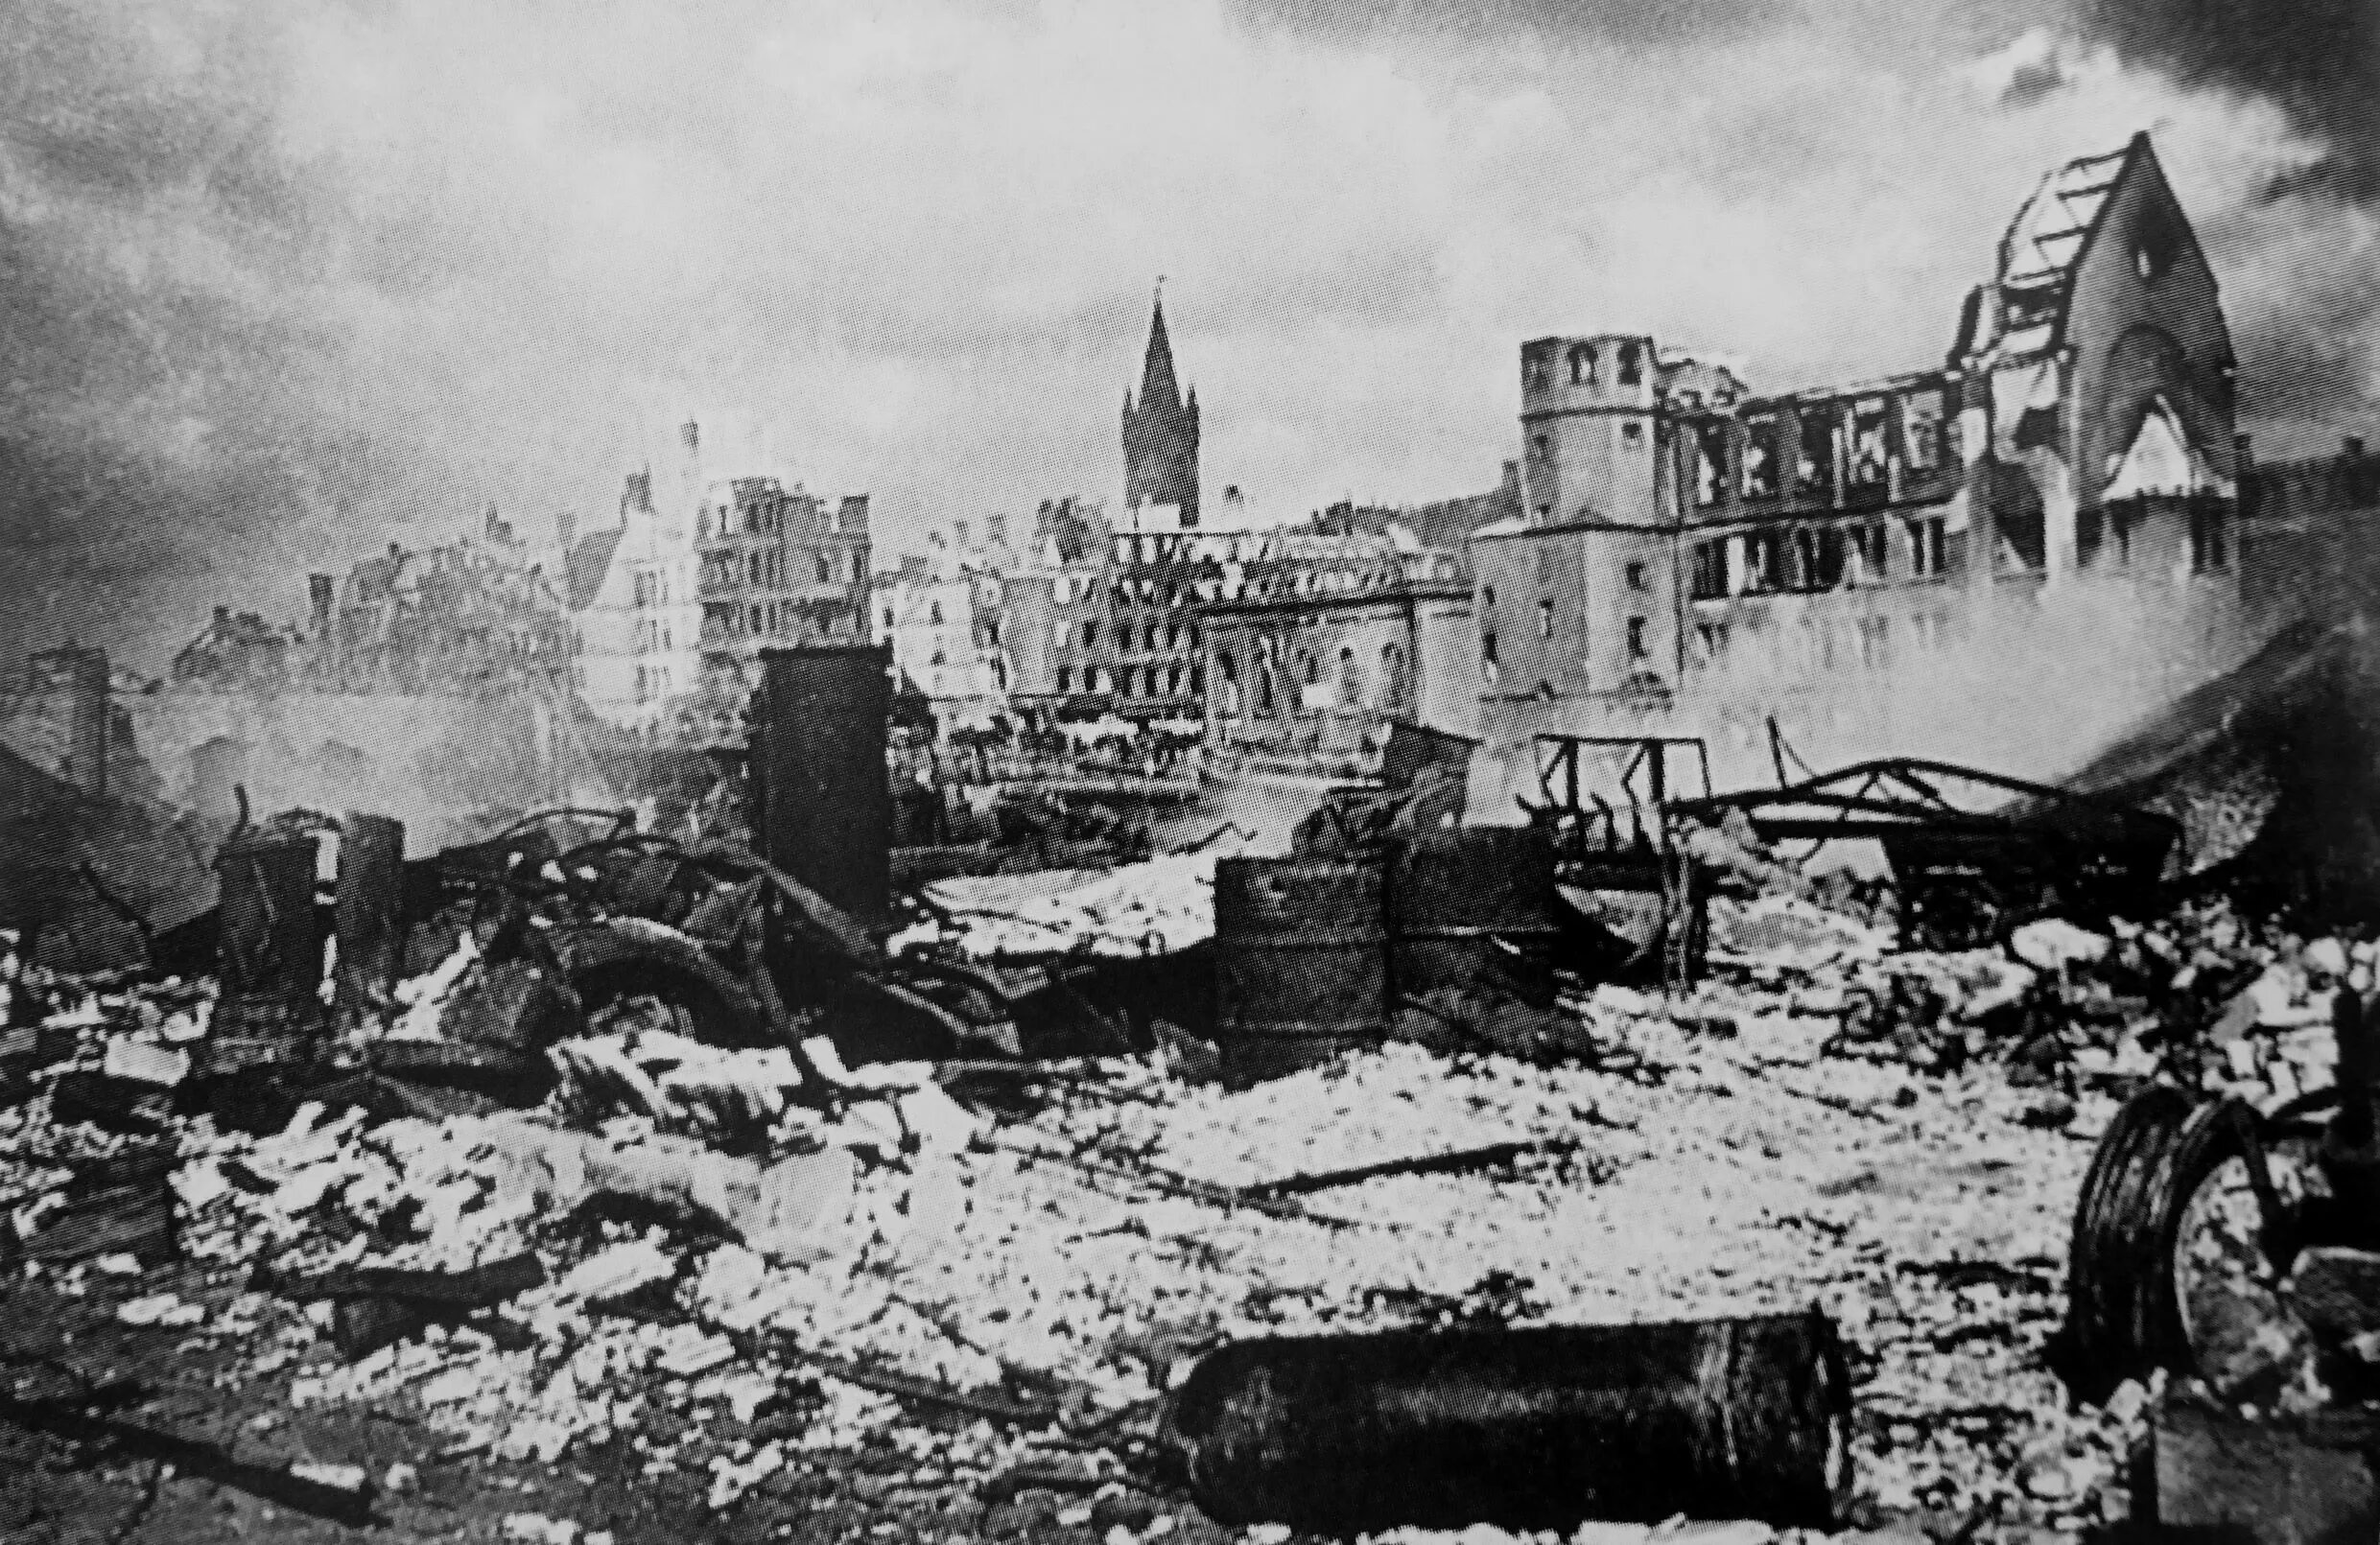 Штурм Кёнигсберга в 1945 году. Кенигсберг операция 1945. Крепость Кенигсберг 1945. Взятие крепости Кенигсберг 9 апреля 1945. Германия будет разрушена